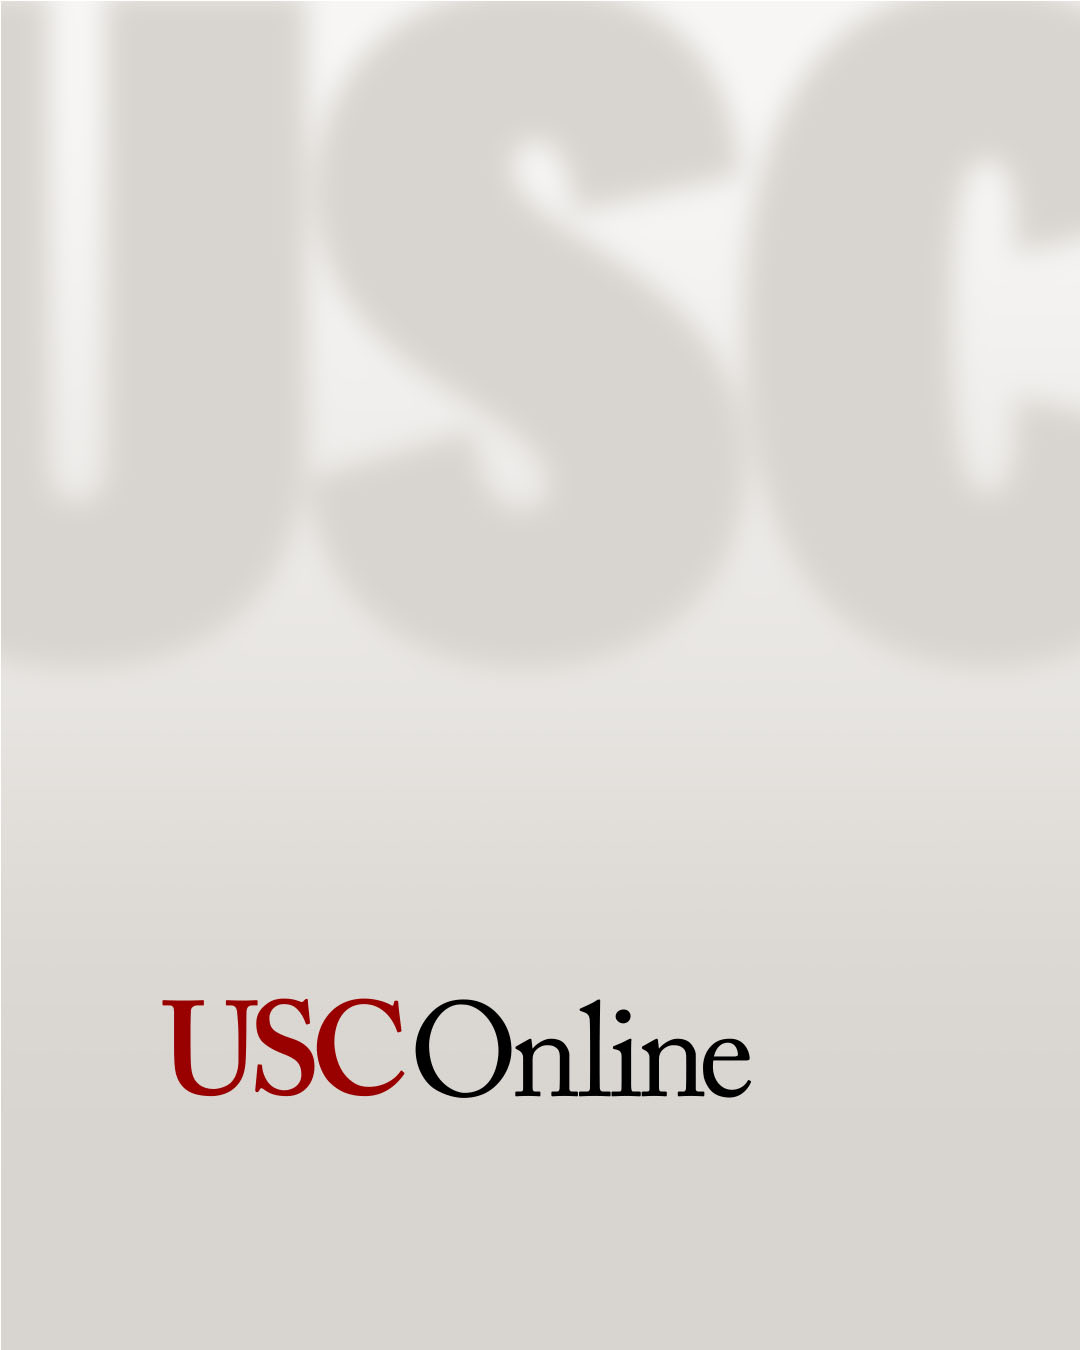 USC Online